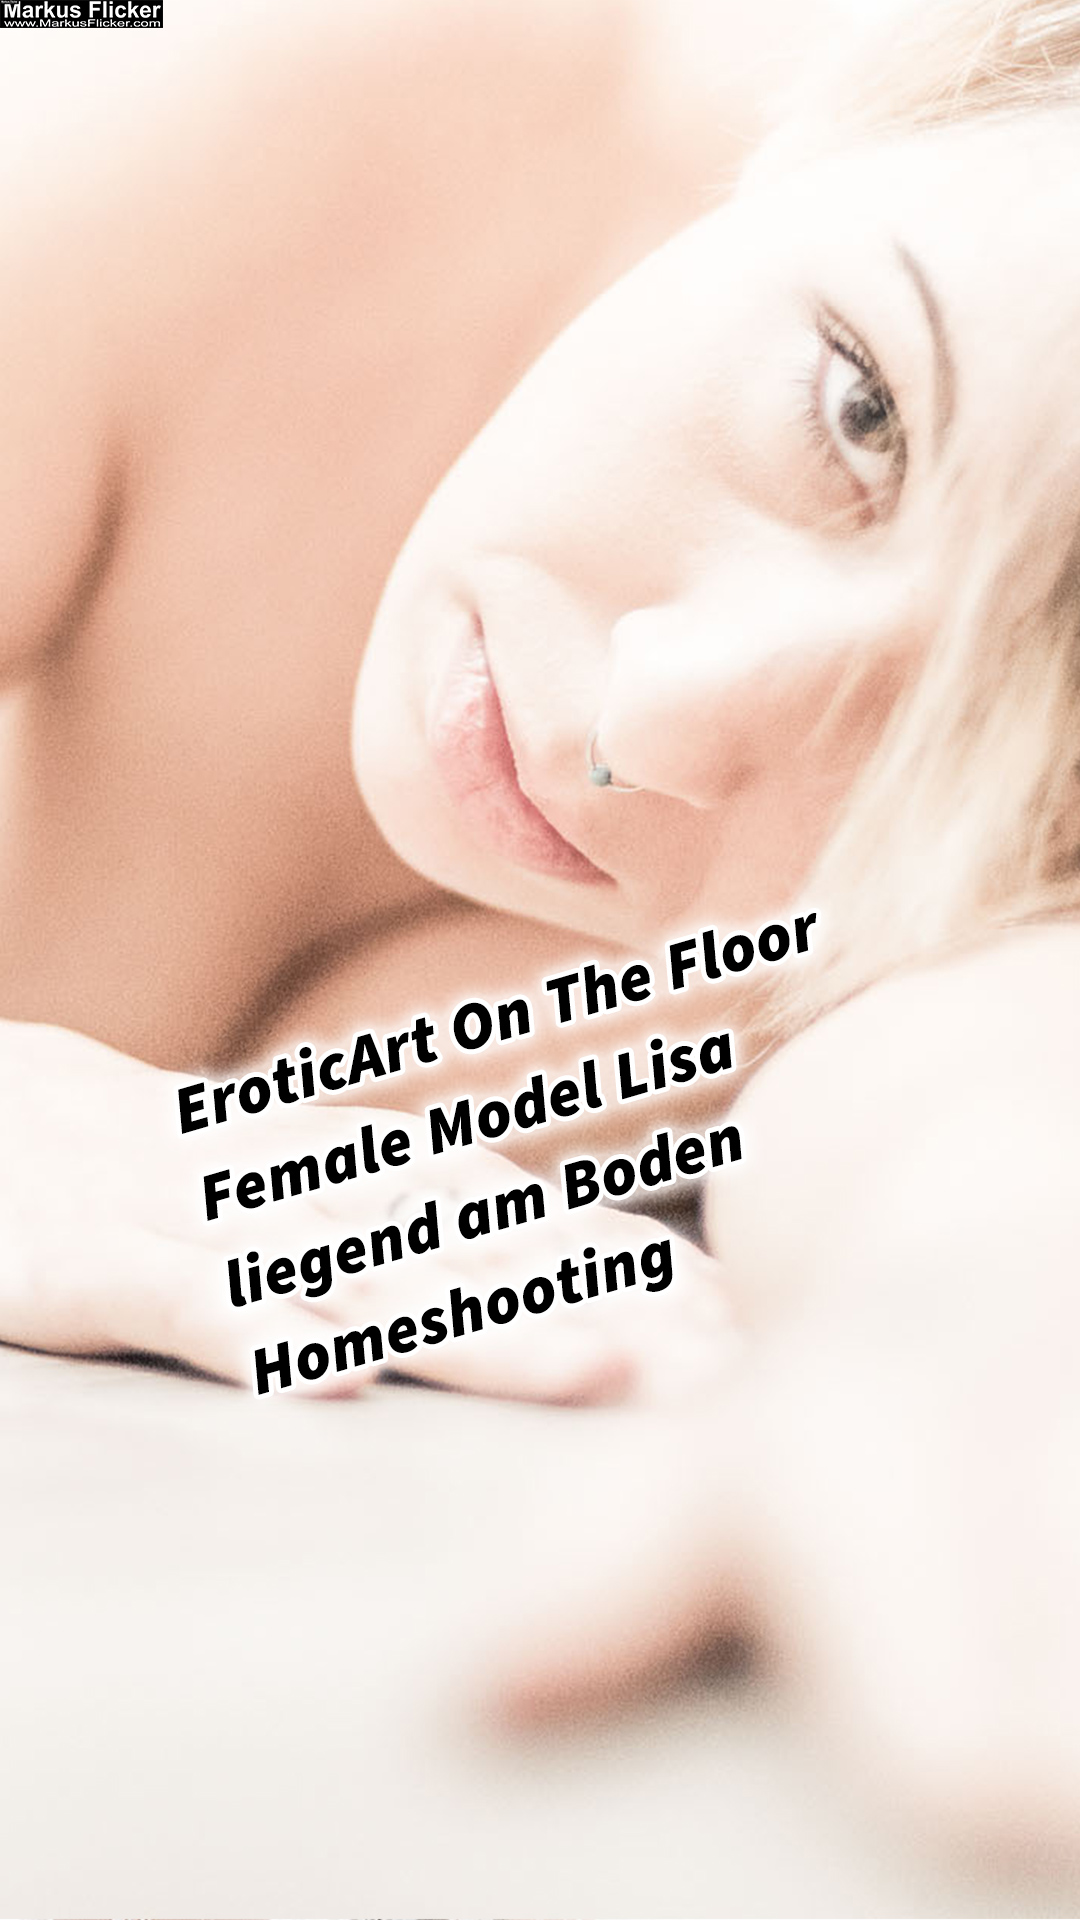 EroticArt On The Floor Female Model Lisa Lying On The Floor Home Shooting Photographer Sensual Erotic Photo Studio Nude Photography